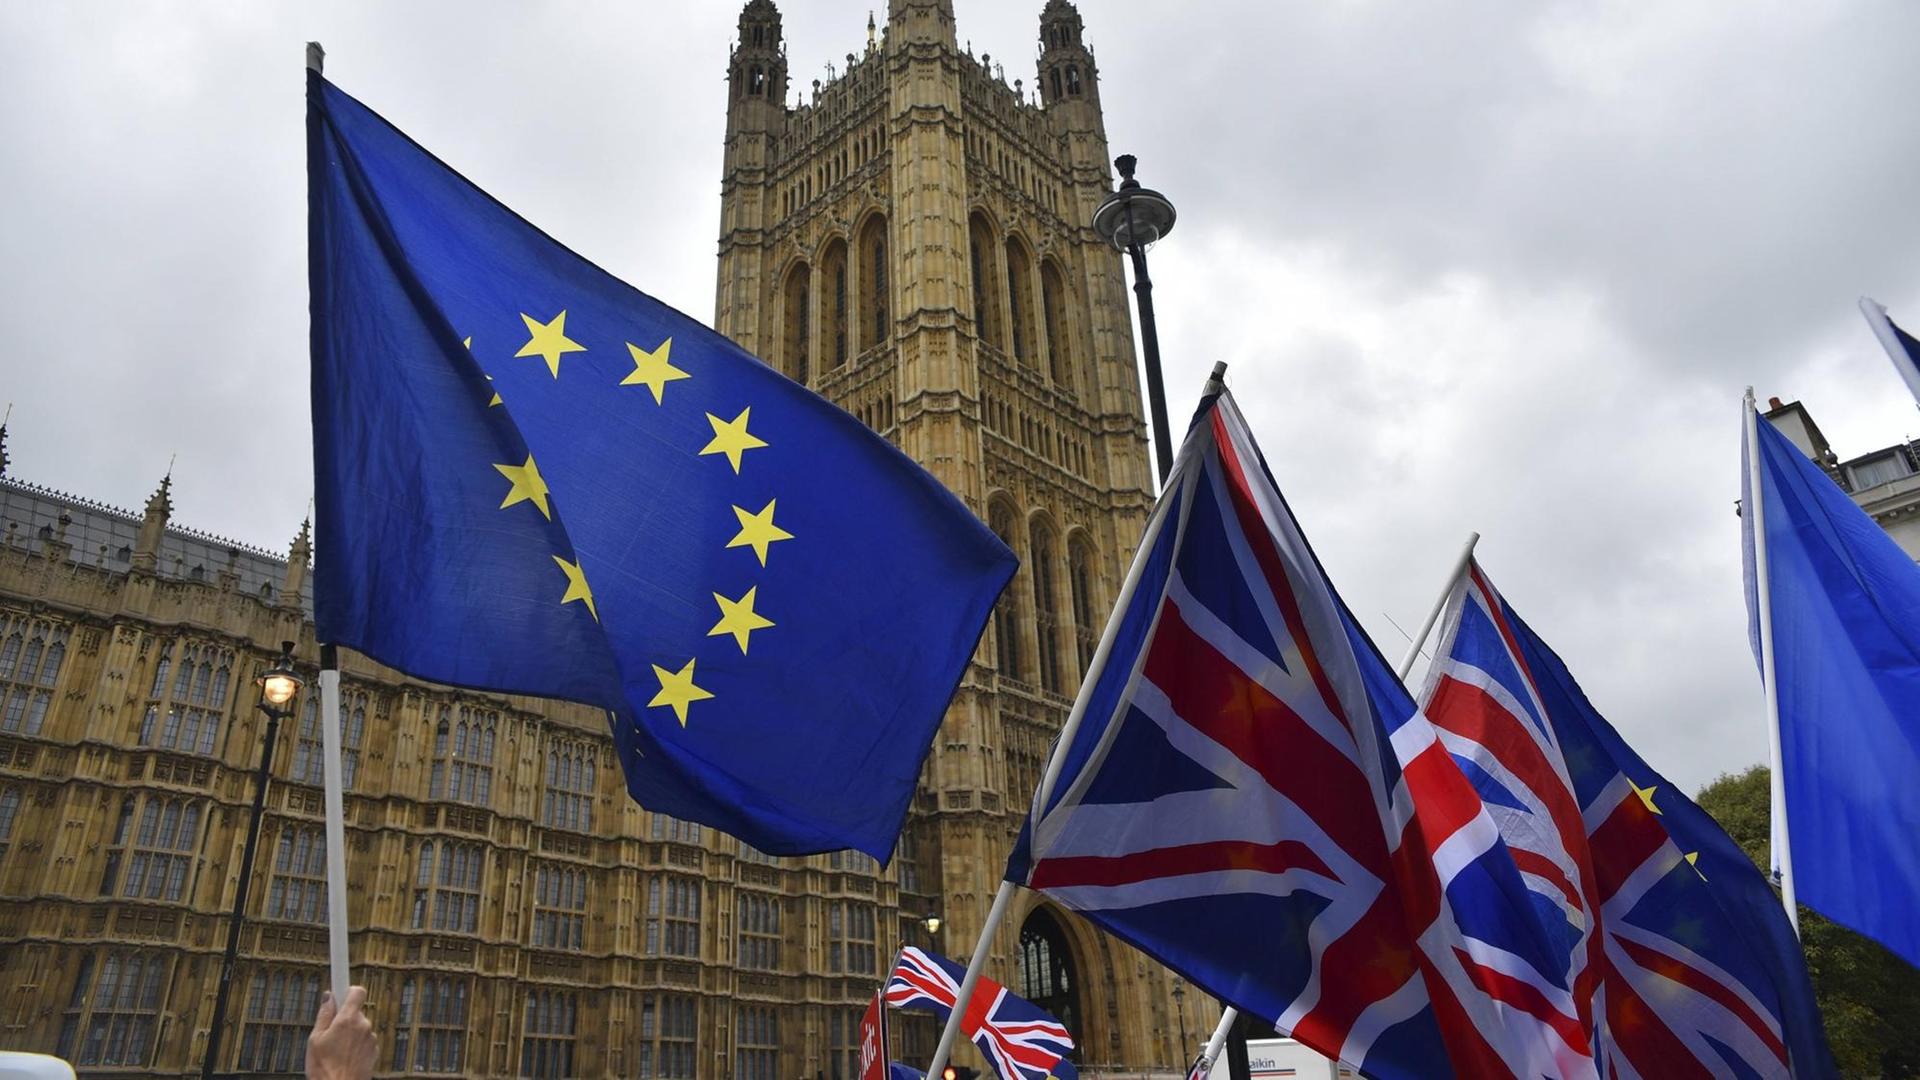 Flaggen Großbritanniens und der EU im September 2018 vor dem britischen Parlament in London.